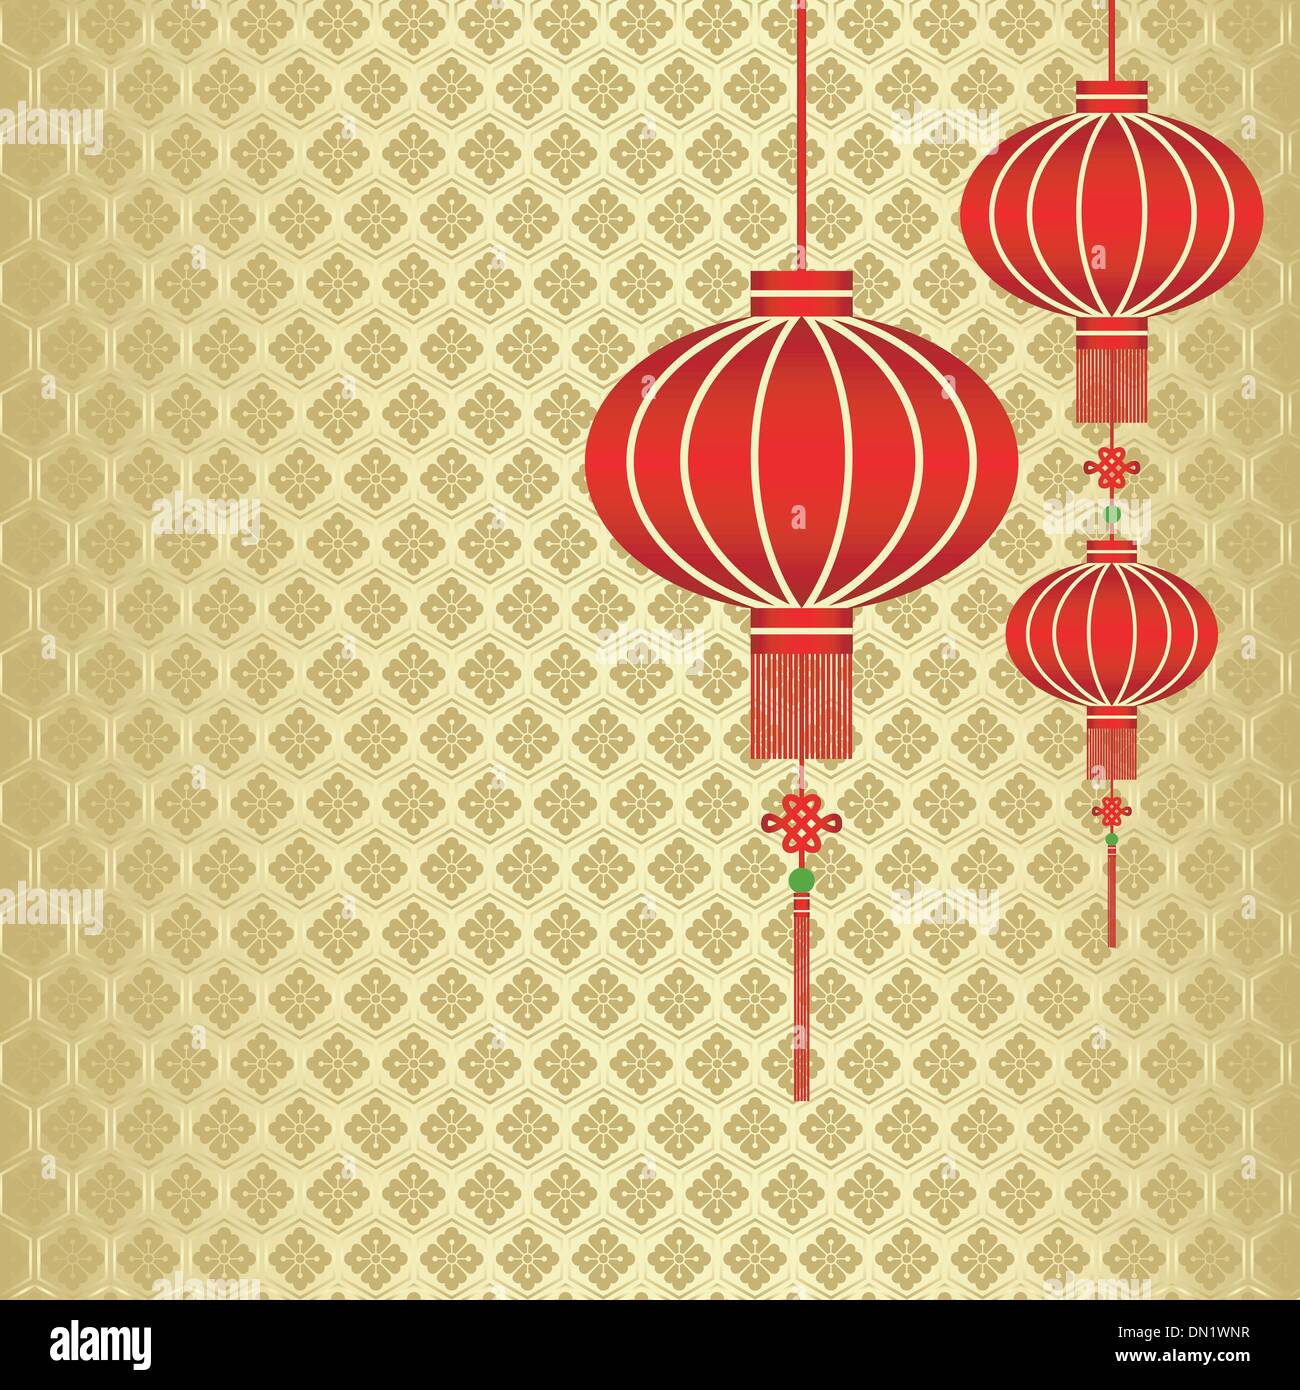 Le Nouvel An chinois Red Lantern Background Illustration de Vecteur